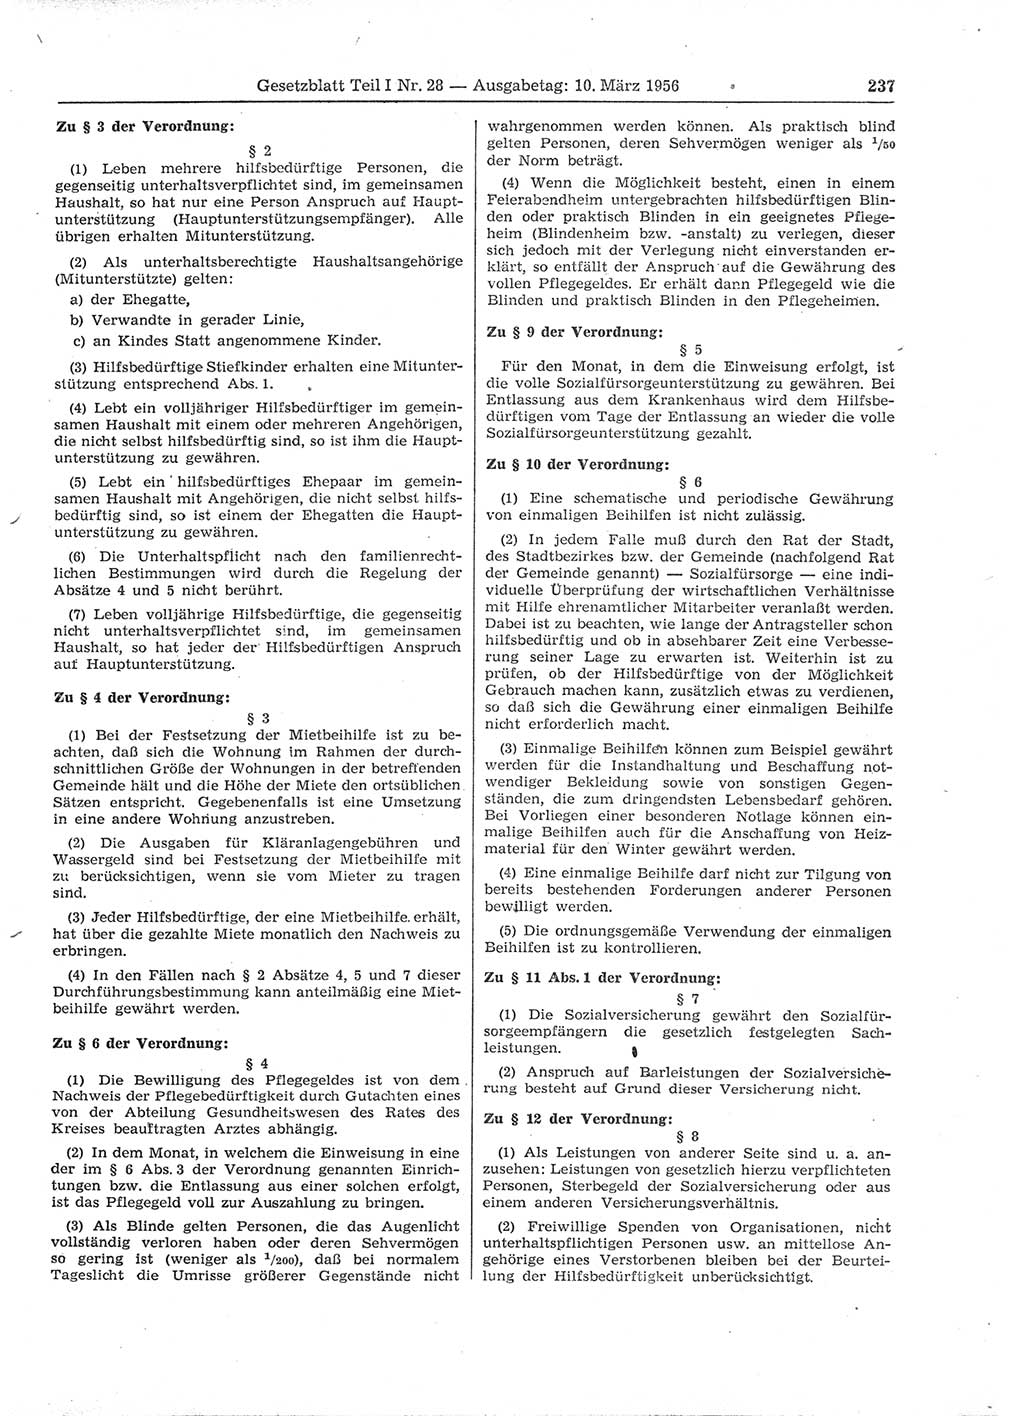 Gesetzblatt (GBl.) der Deutschen Demokratischen Republik (DDR) Teil Ⅰ 1956, Seite 237 (GBl. DDR Ⅰ 1956, S. 237)